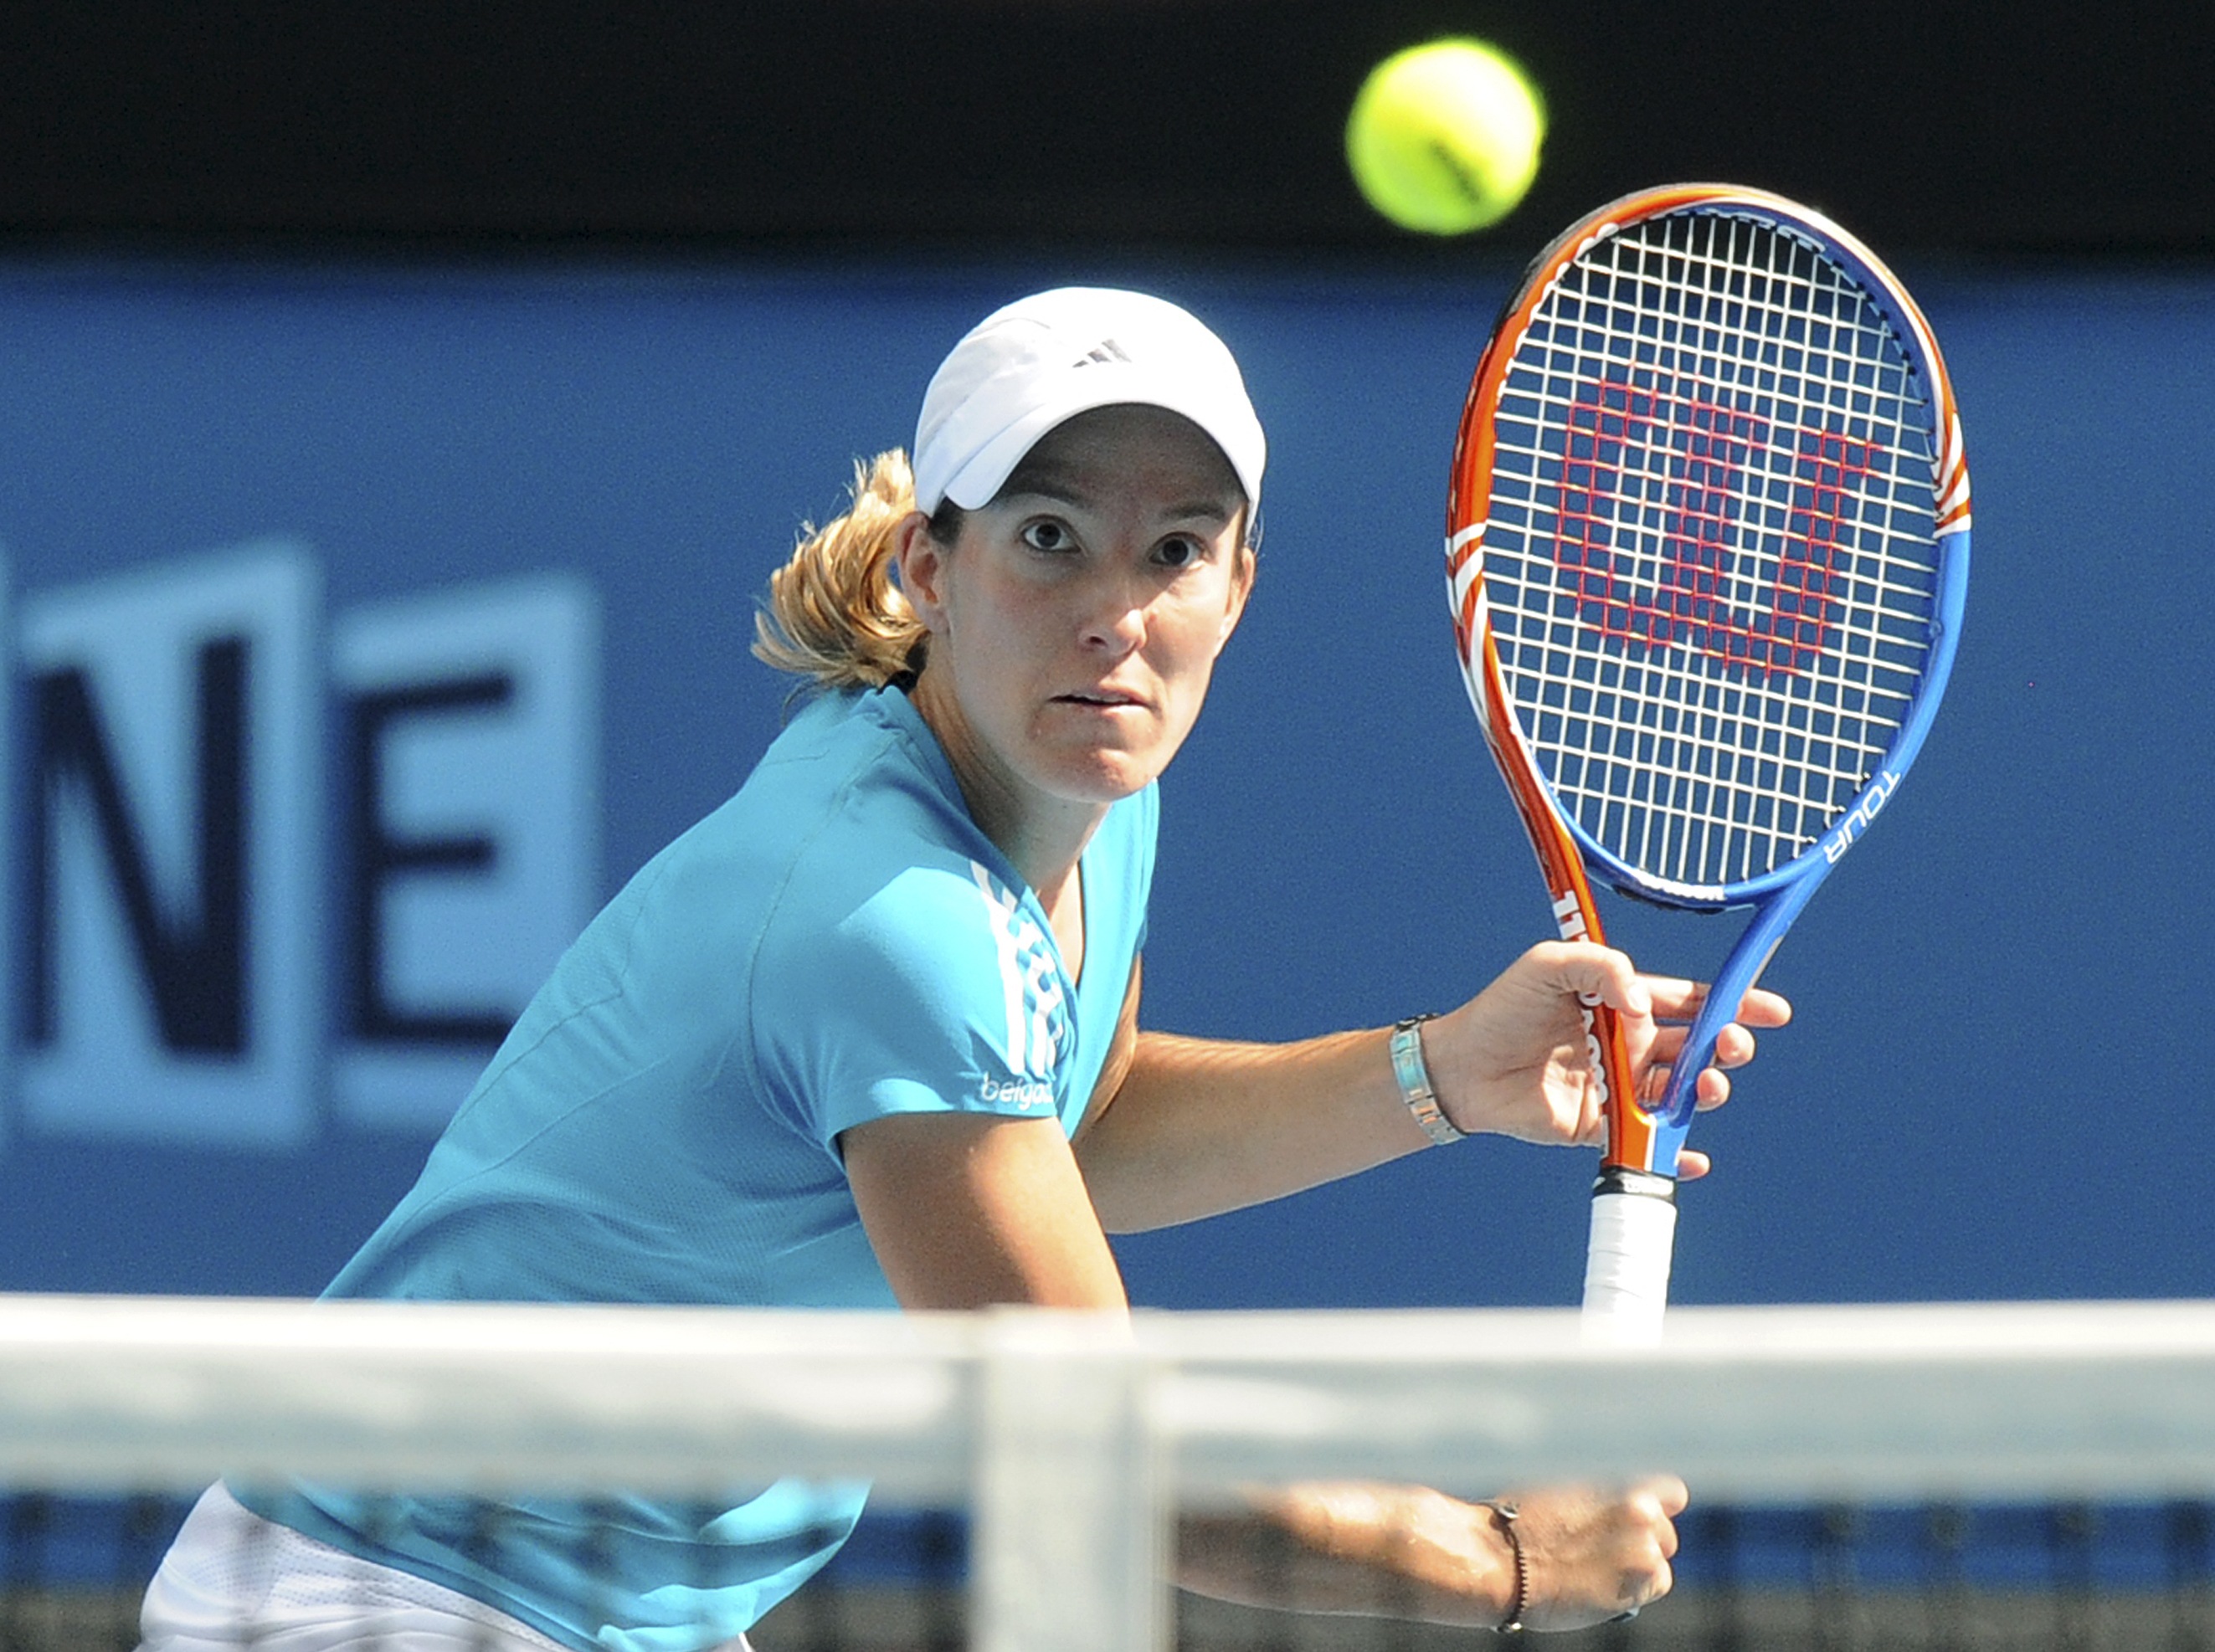 Tennis, Justine Henin, Australian Open